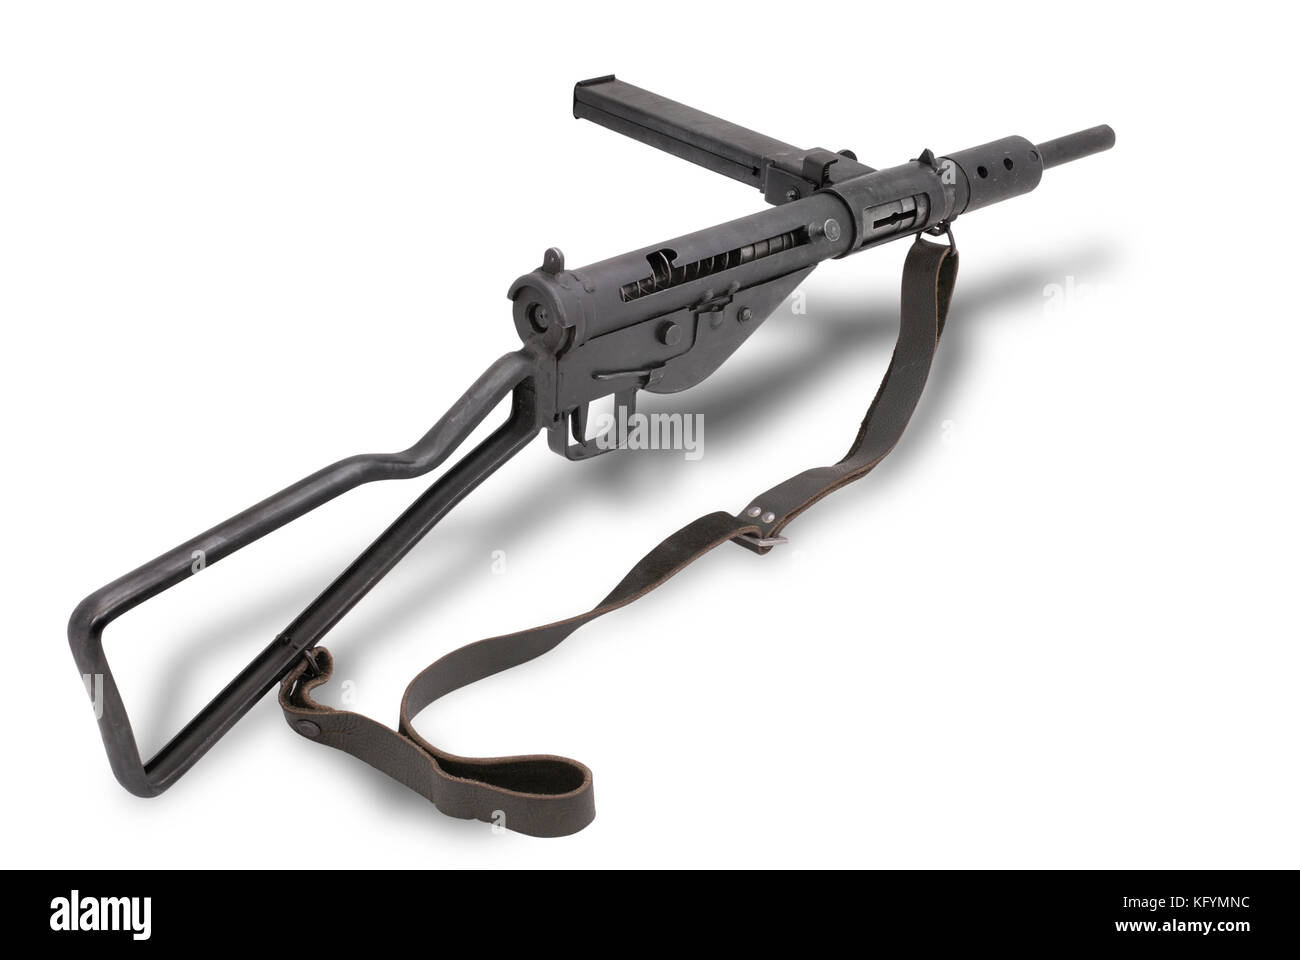 La gran bretagna a ww2. british mitragliatore sten mk2. Il sten (o pistola sten) era una famiglia britannica di 9 mm dei mitra ampiamente utilizzata dalla BRI Foto Stock